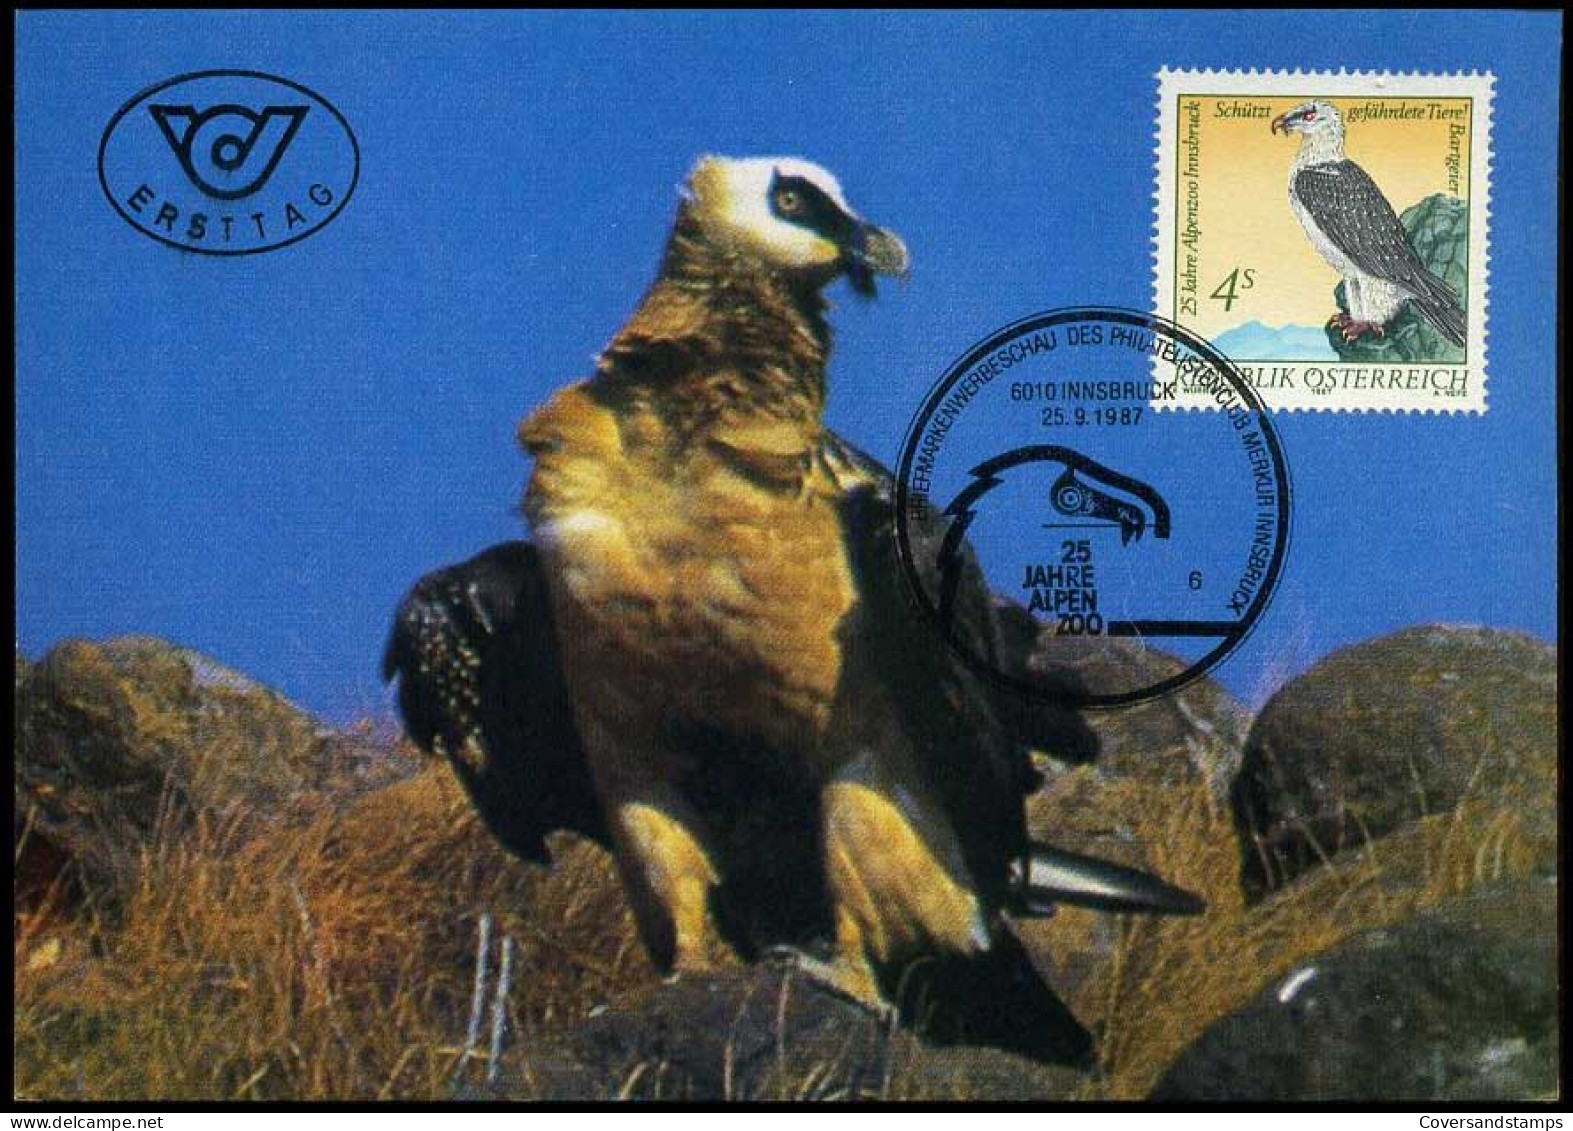 österreich - Maximum Card - Schützt Gefährdete Tiere - Eagles & Birds Of Prey